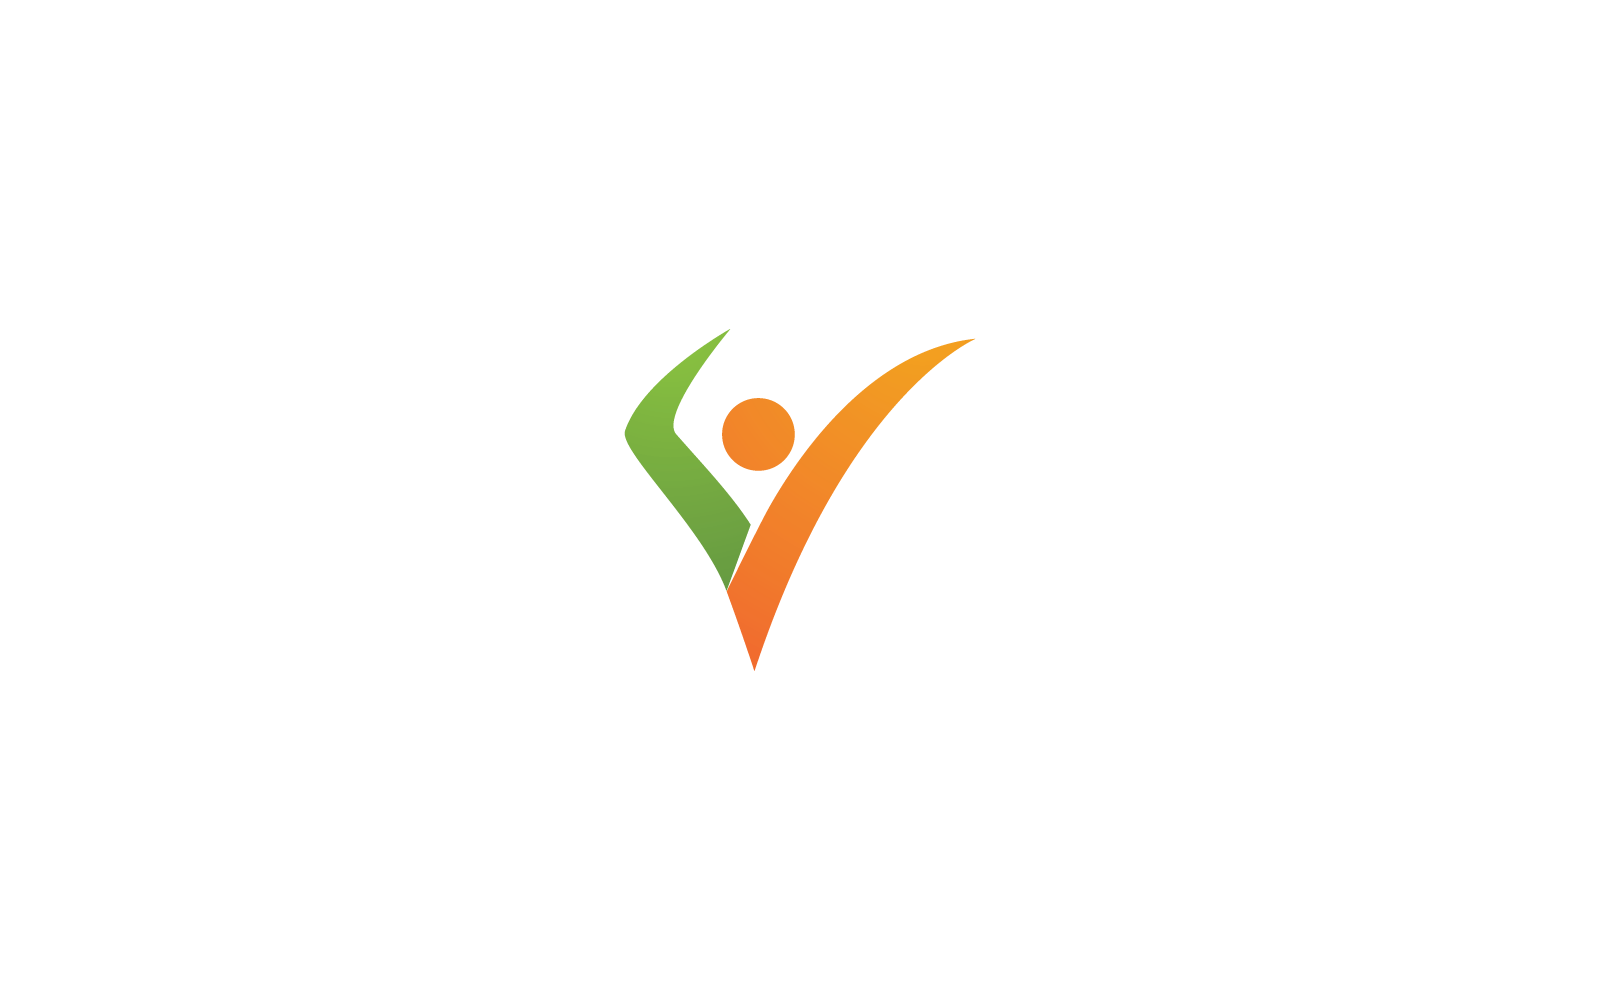 Healthy Life people Logo vector icon